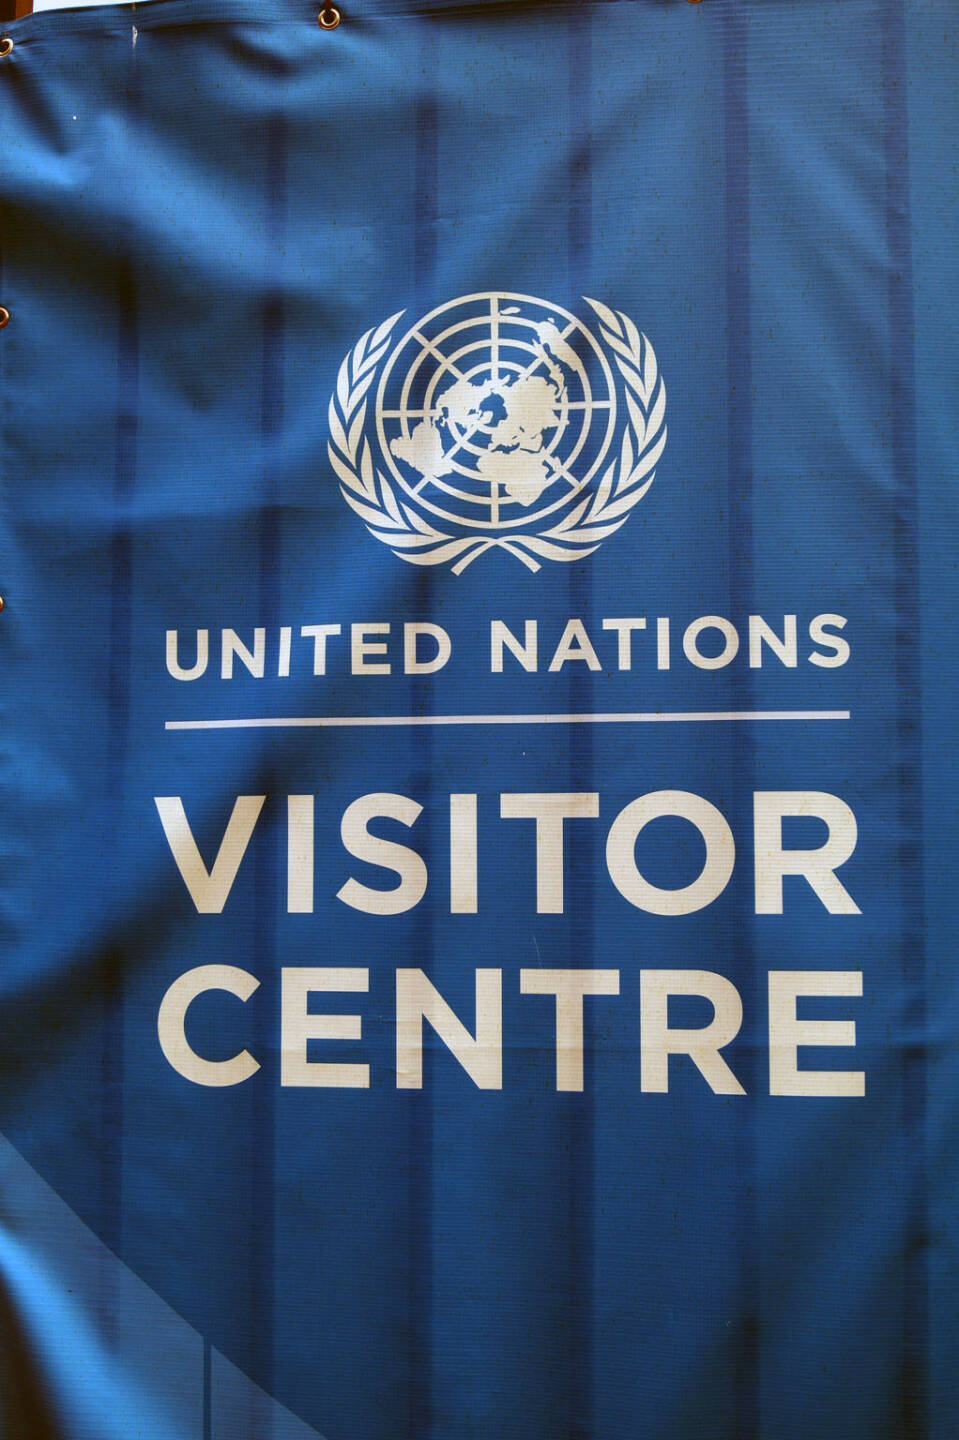 United Nations, UN (Bild: bestevent.at)